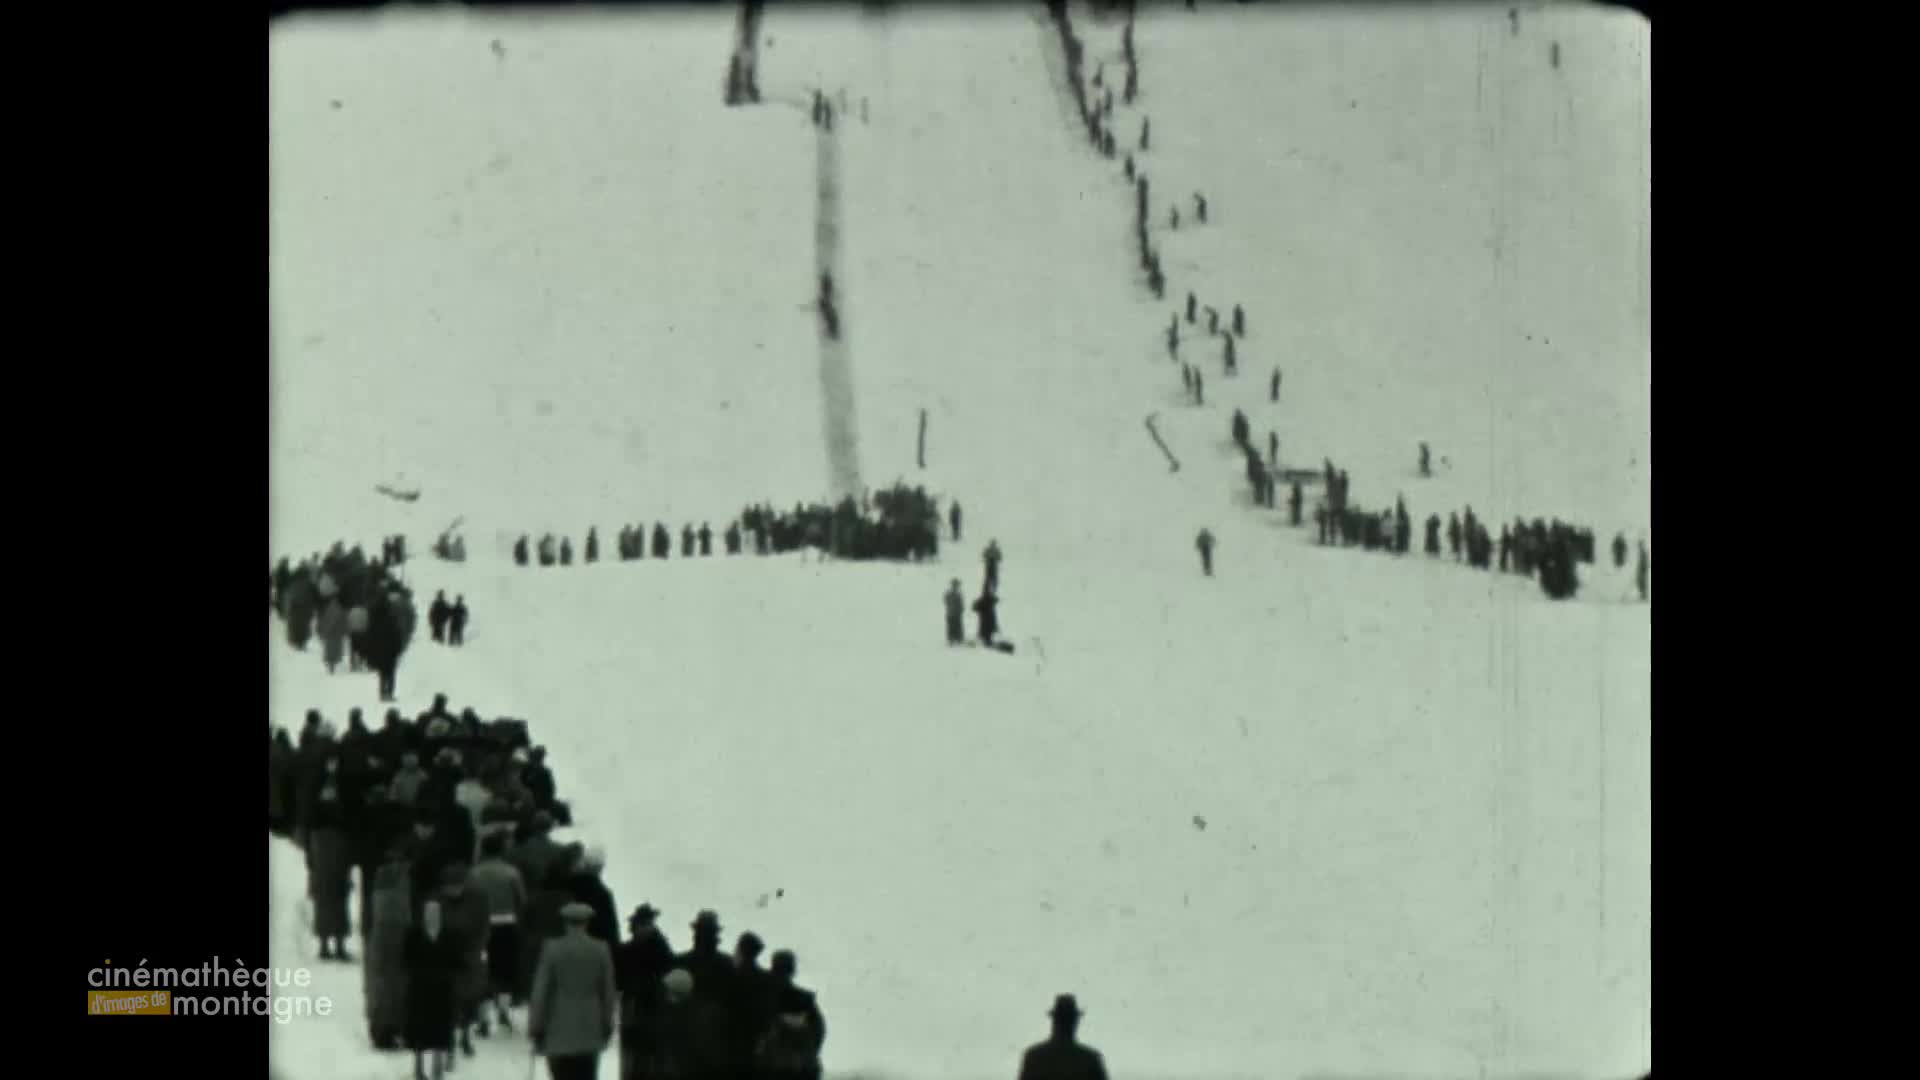 Vacances au ski, Allemagne 1941